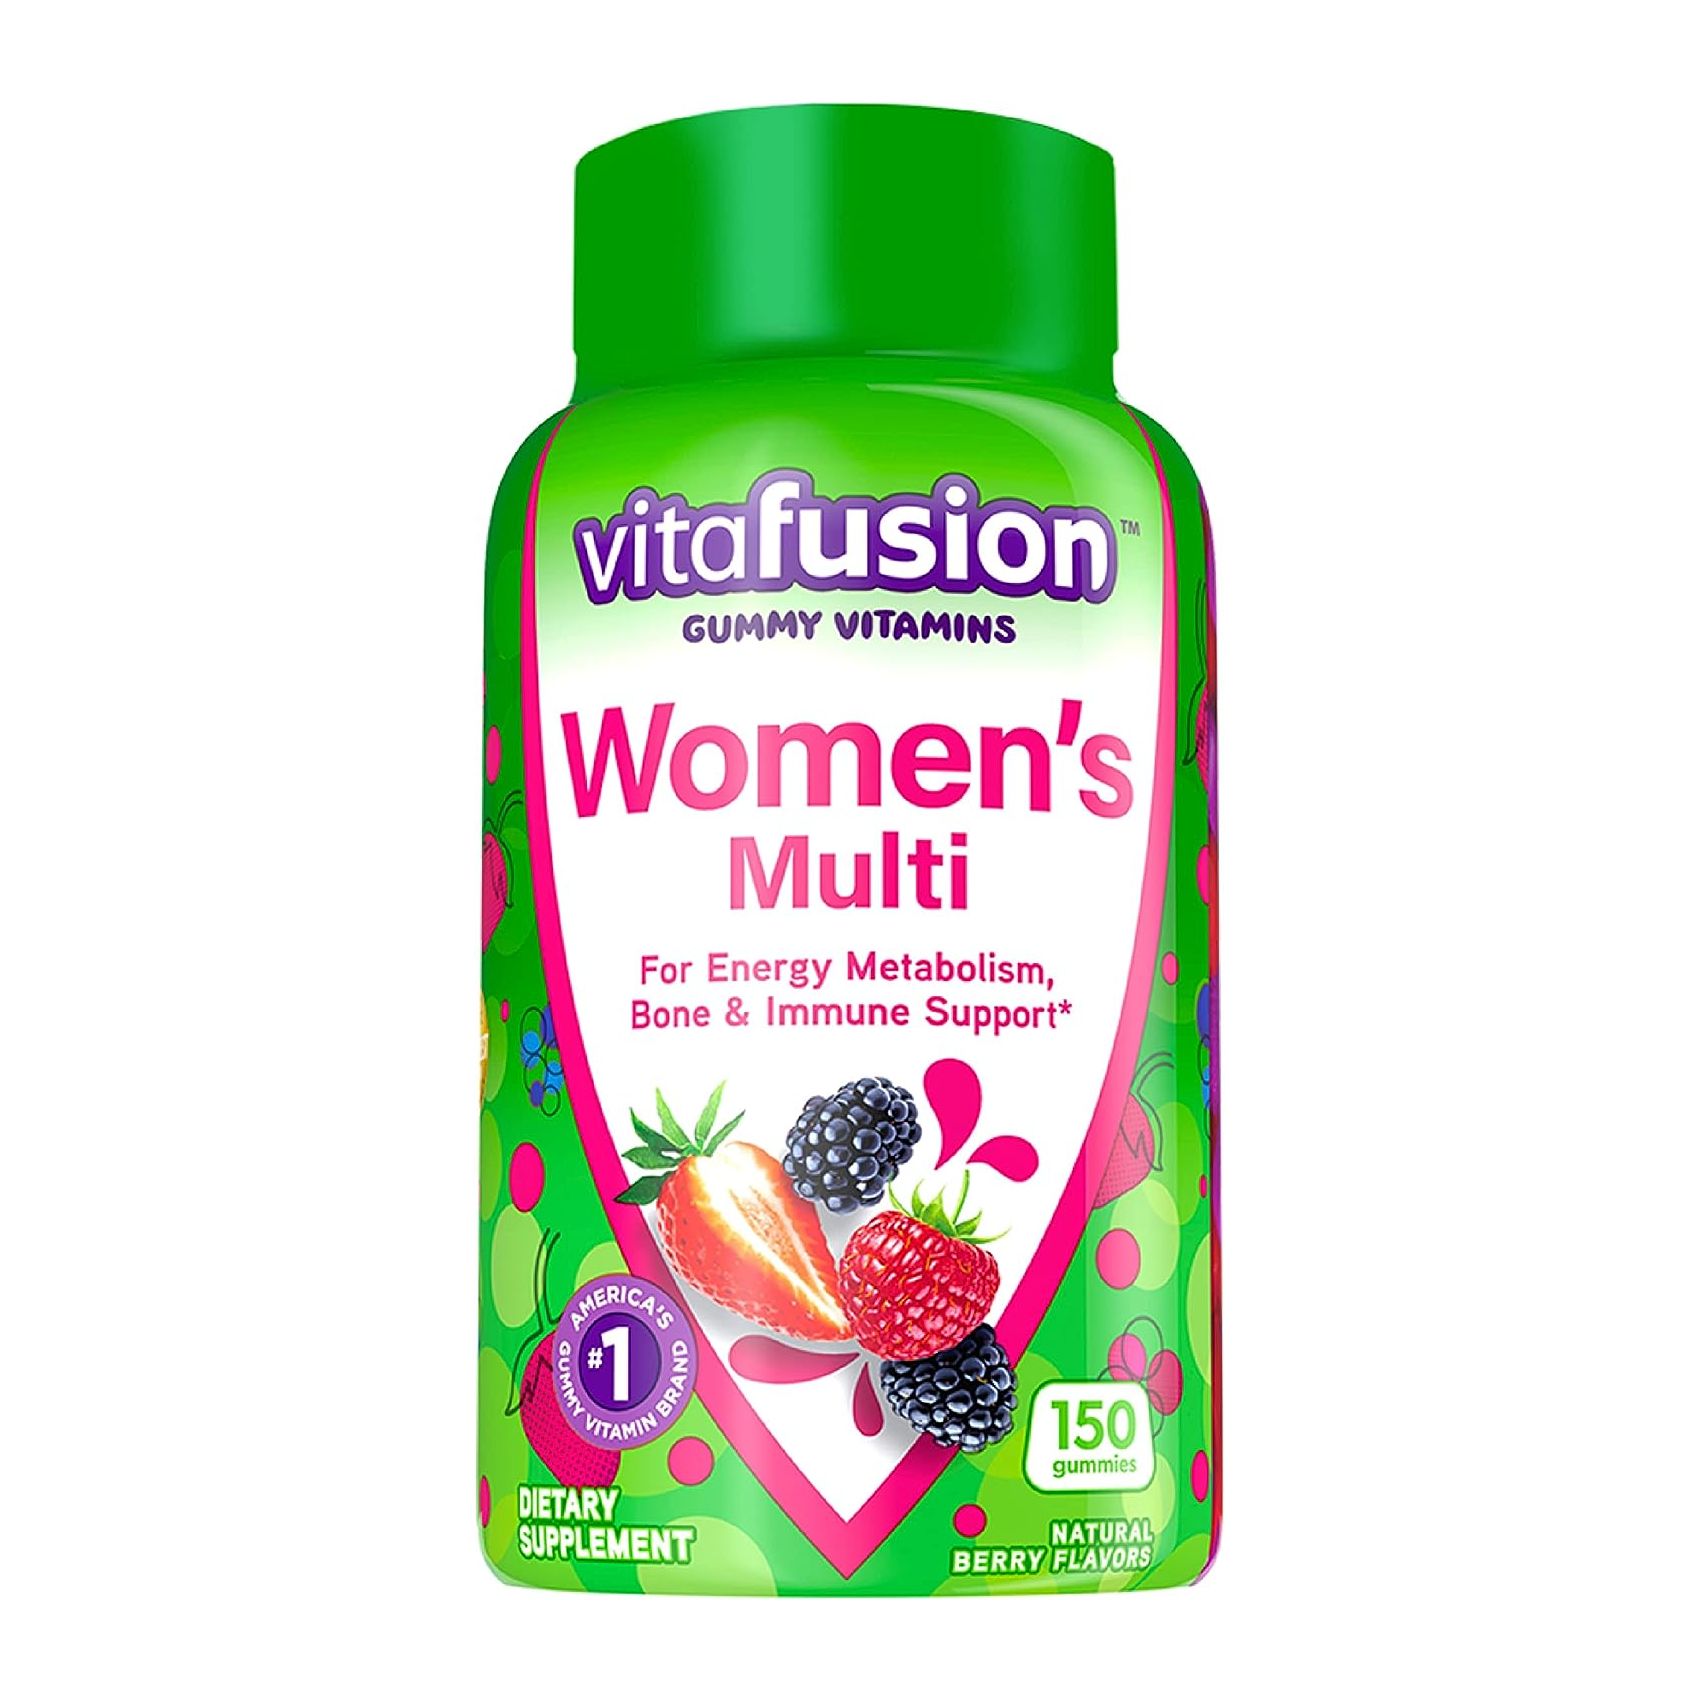 Мультивитамины Vitafusion Womens Gummies Berry Flavored, 150 жевательных конфет цена и фото